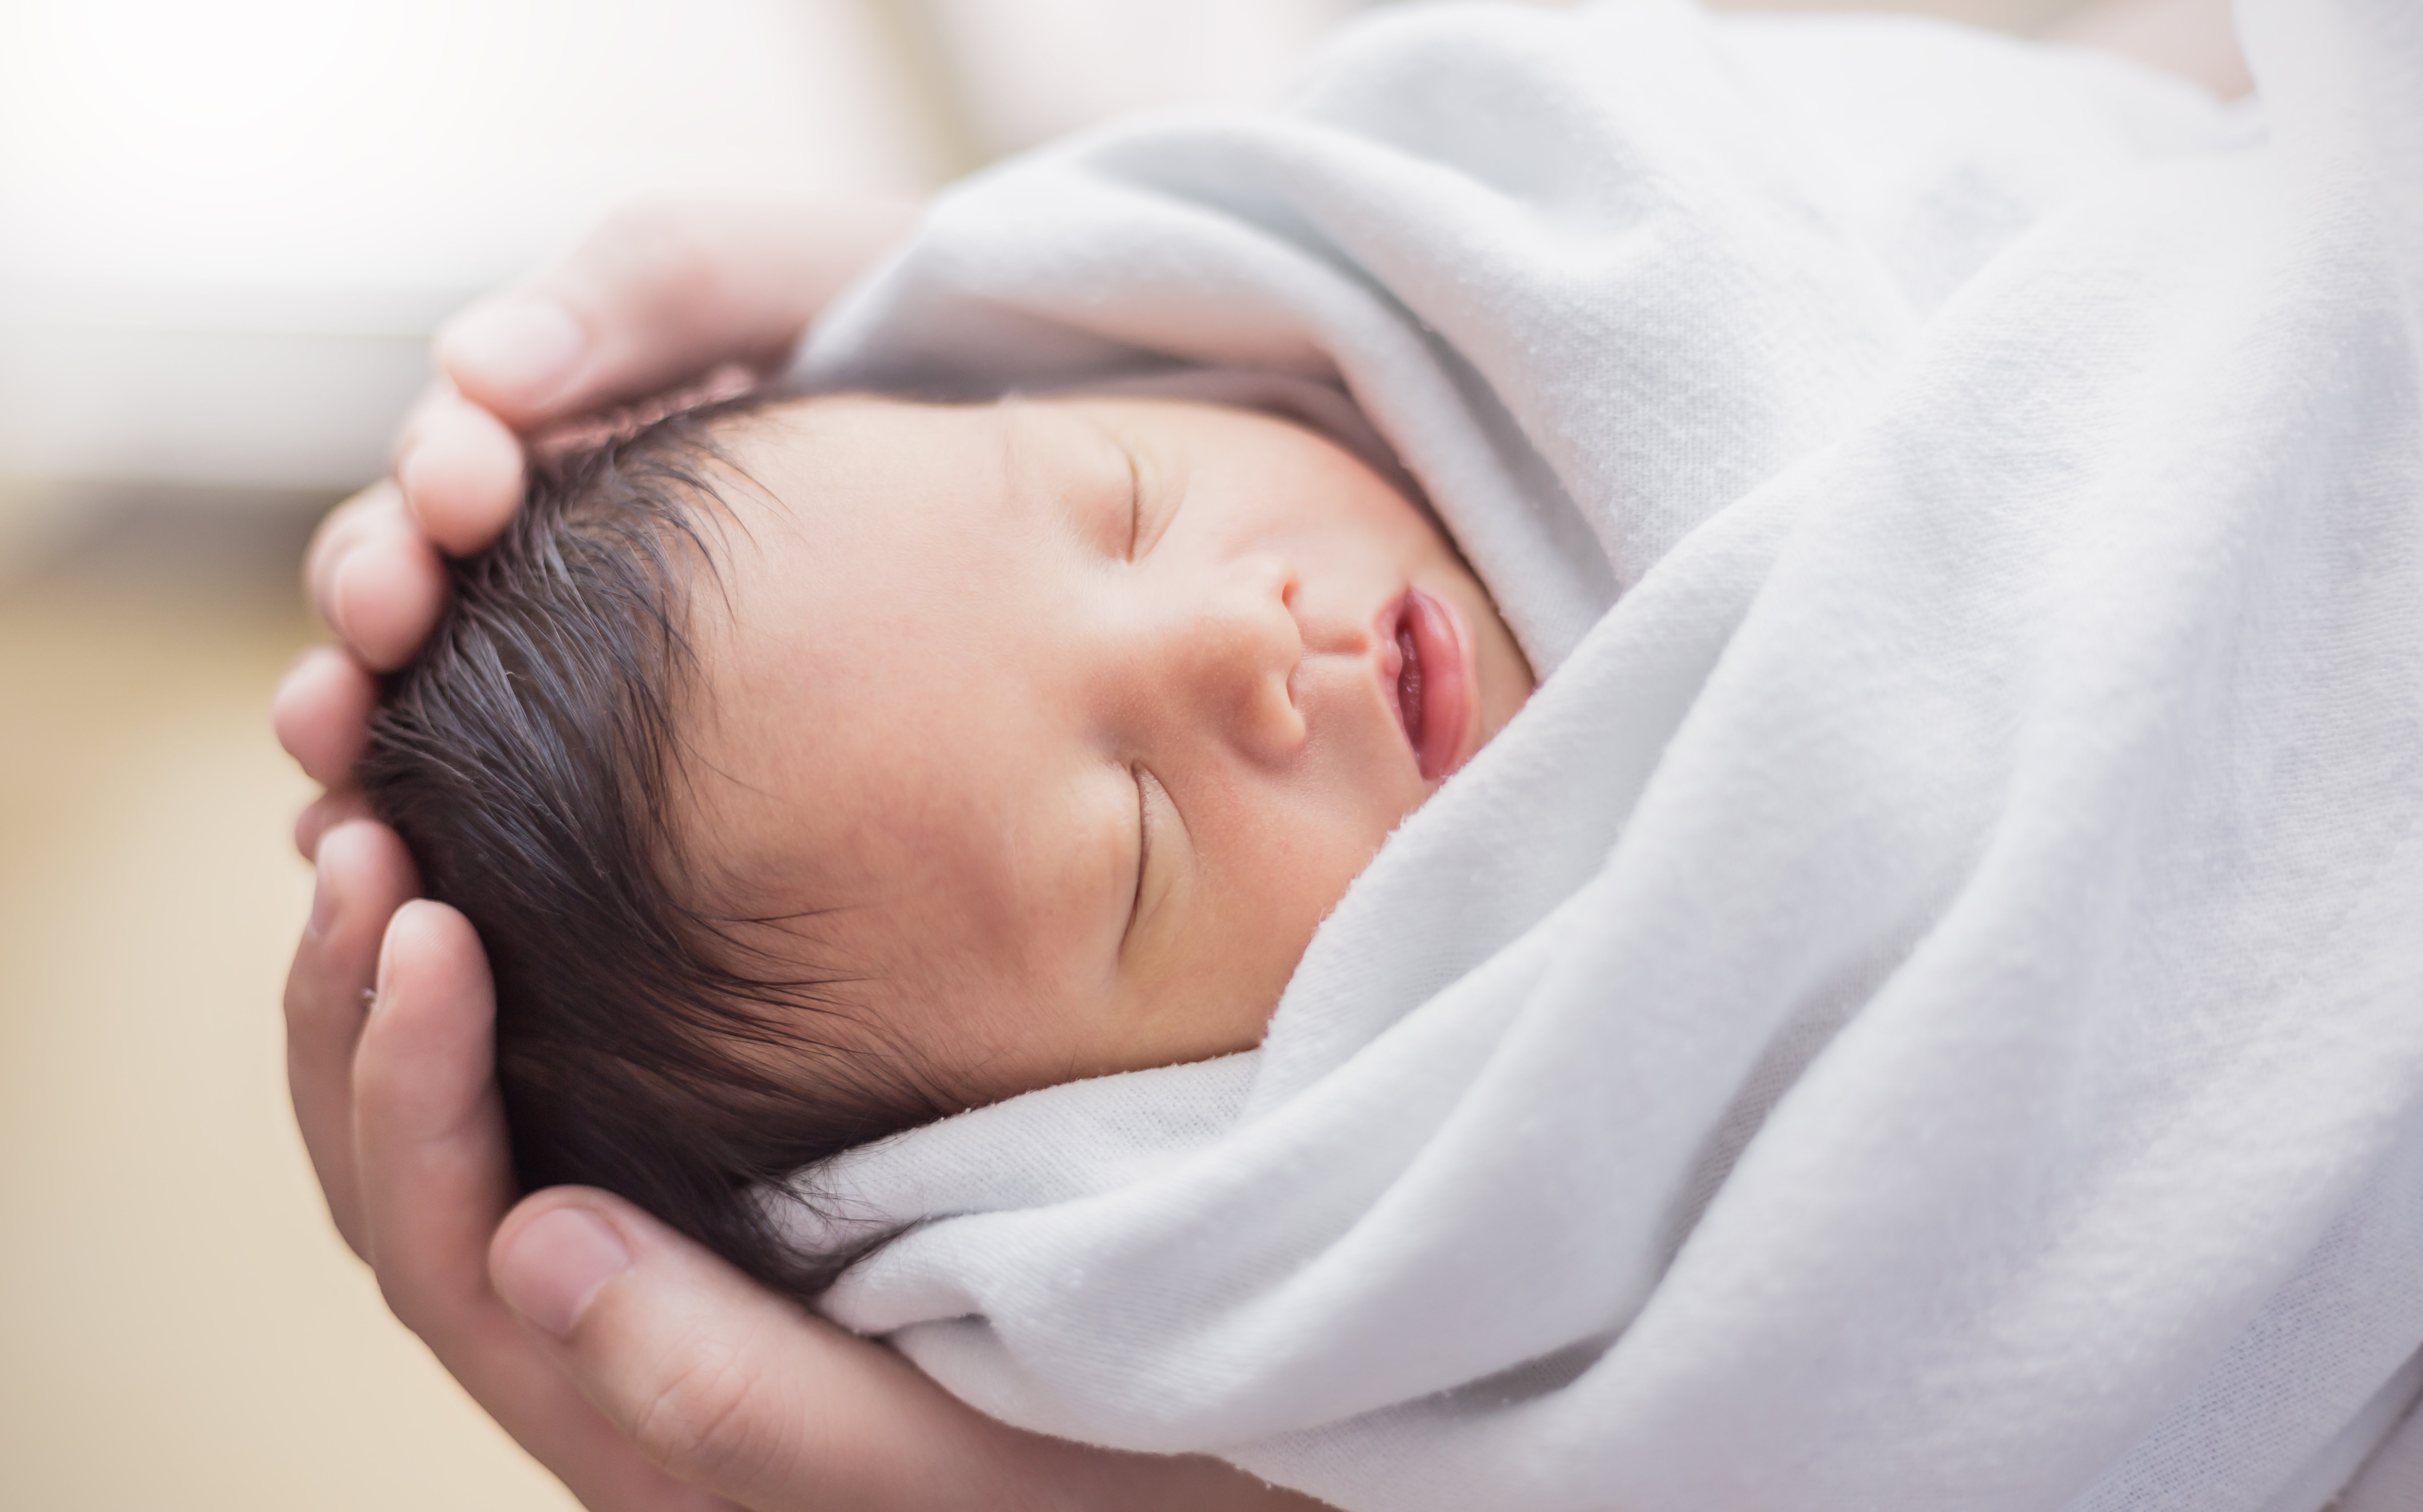 Un bebé recién nacido. | Foto: Shutterstock